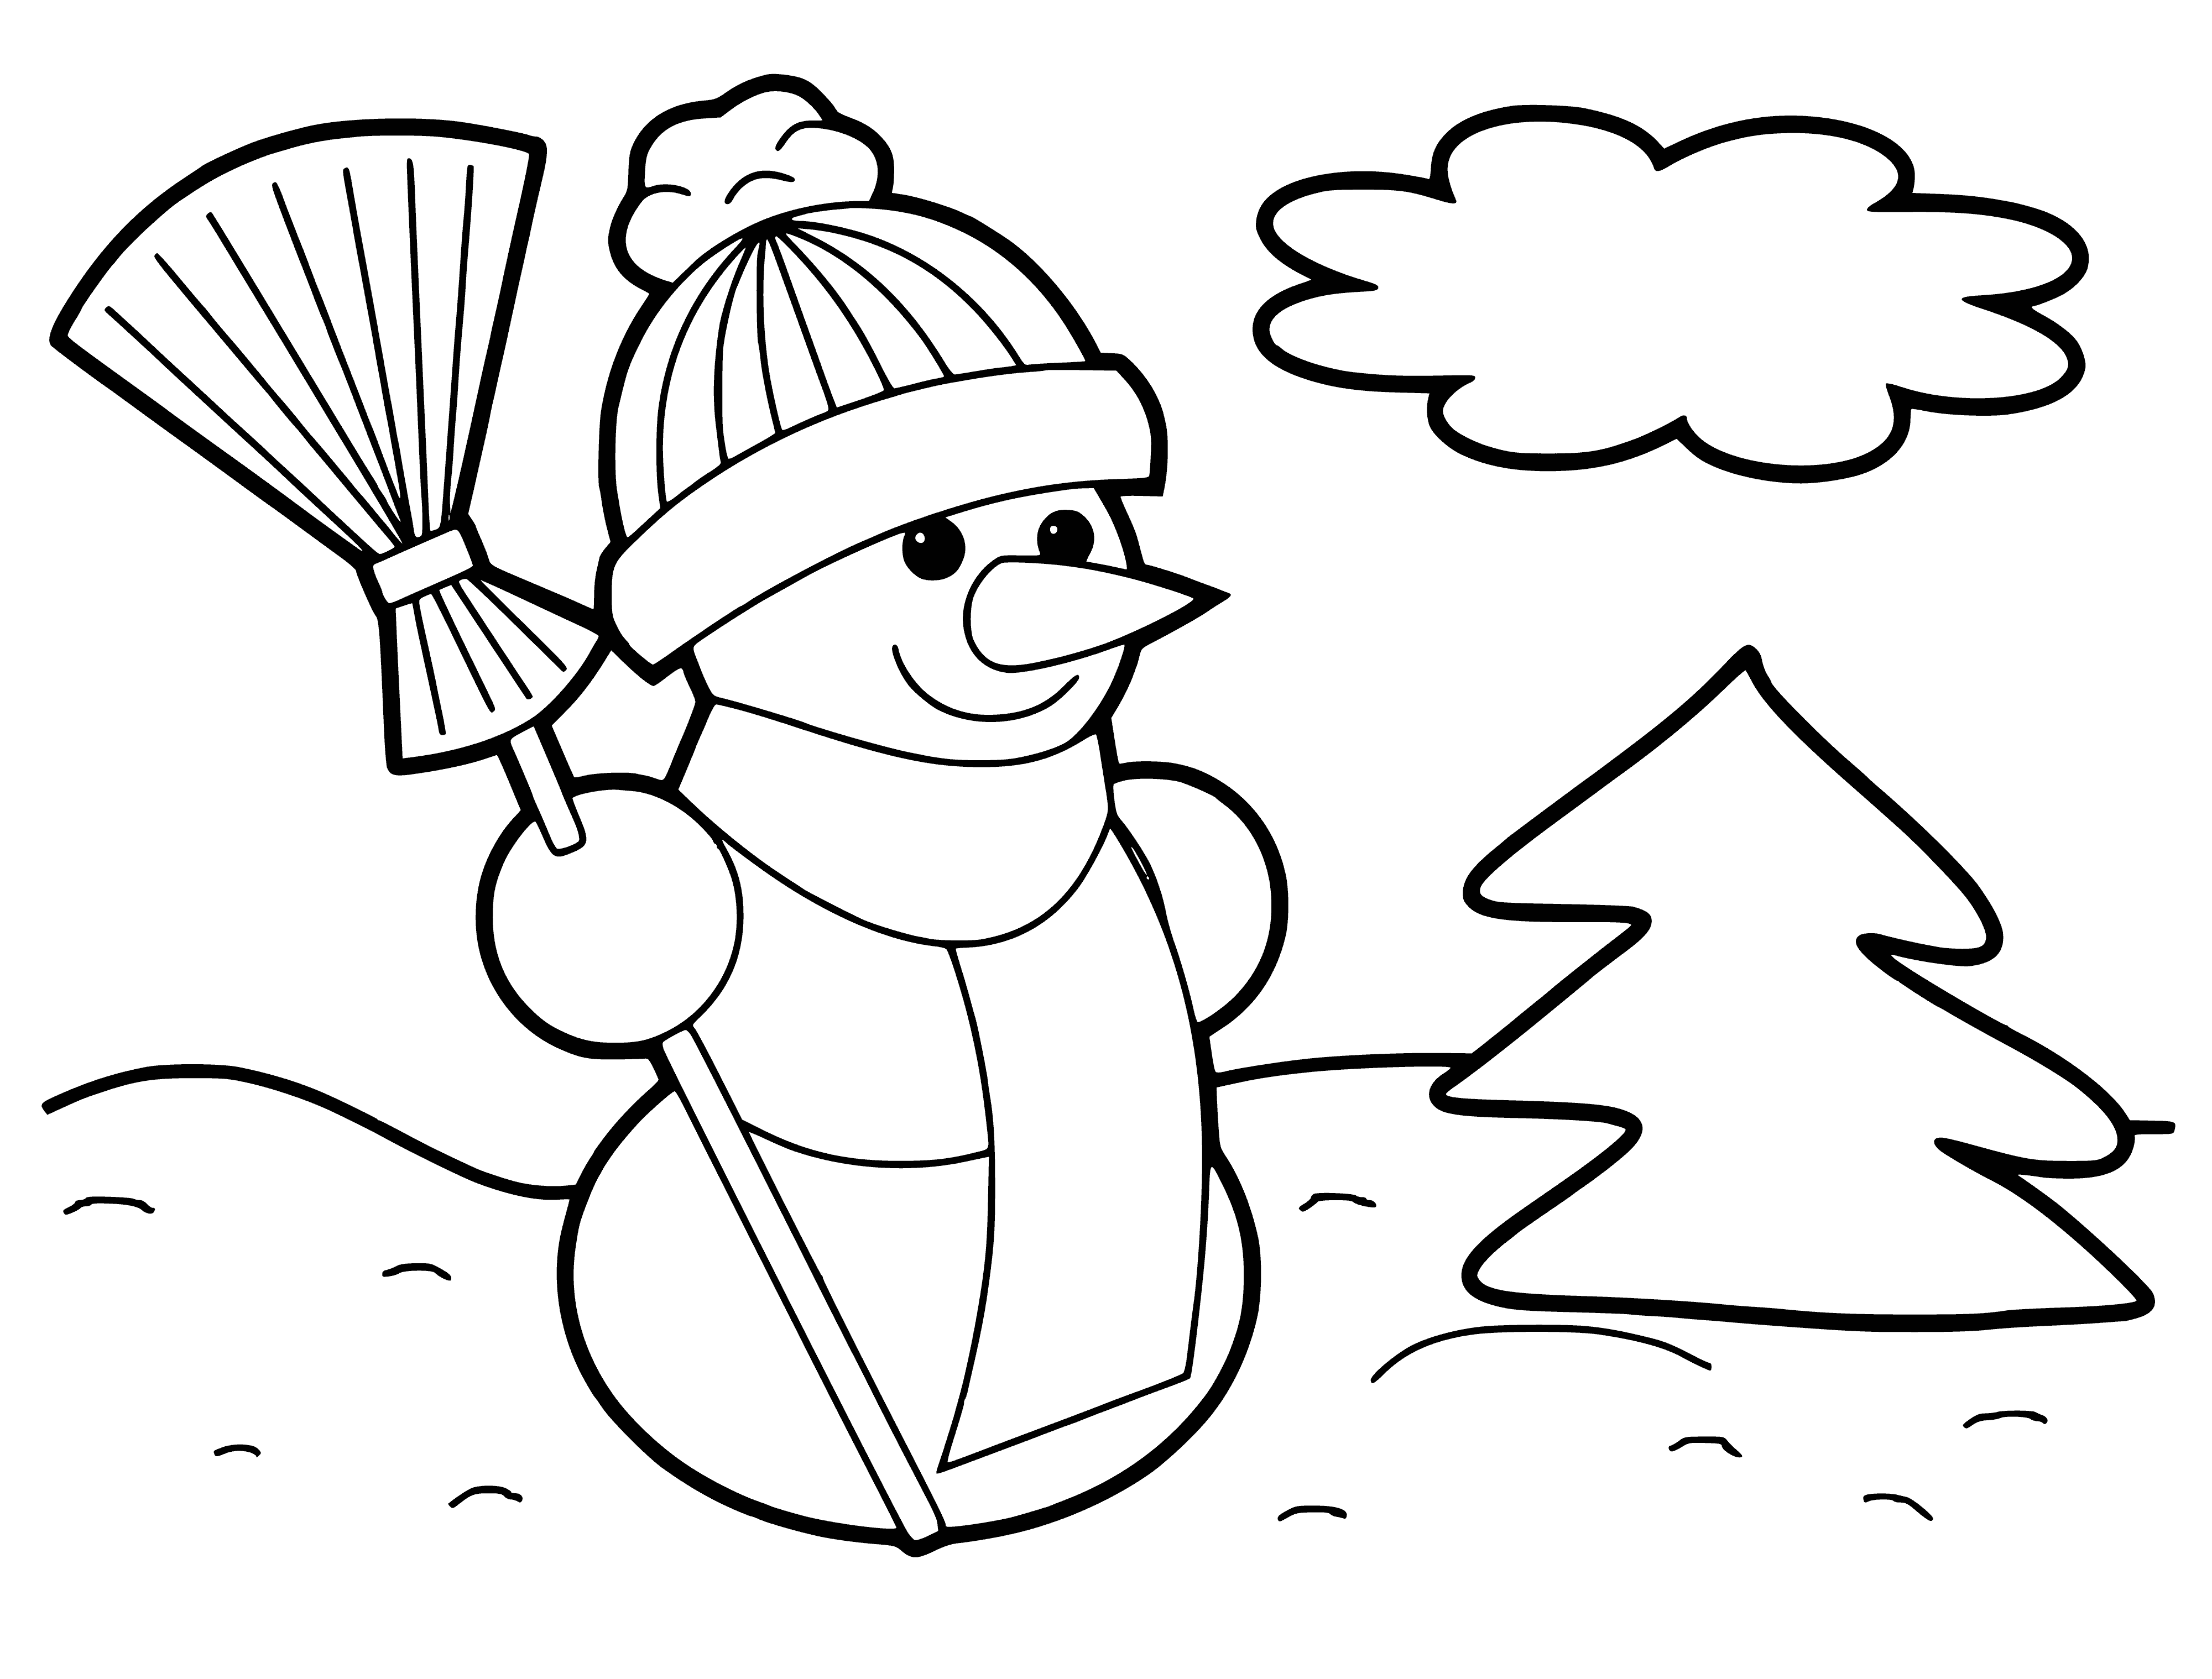 Schneemann mit Besen am Weihnachtsbaum Malseite